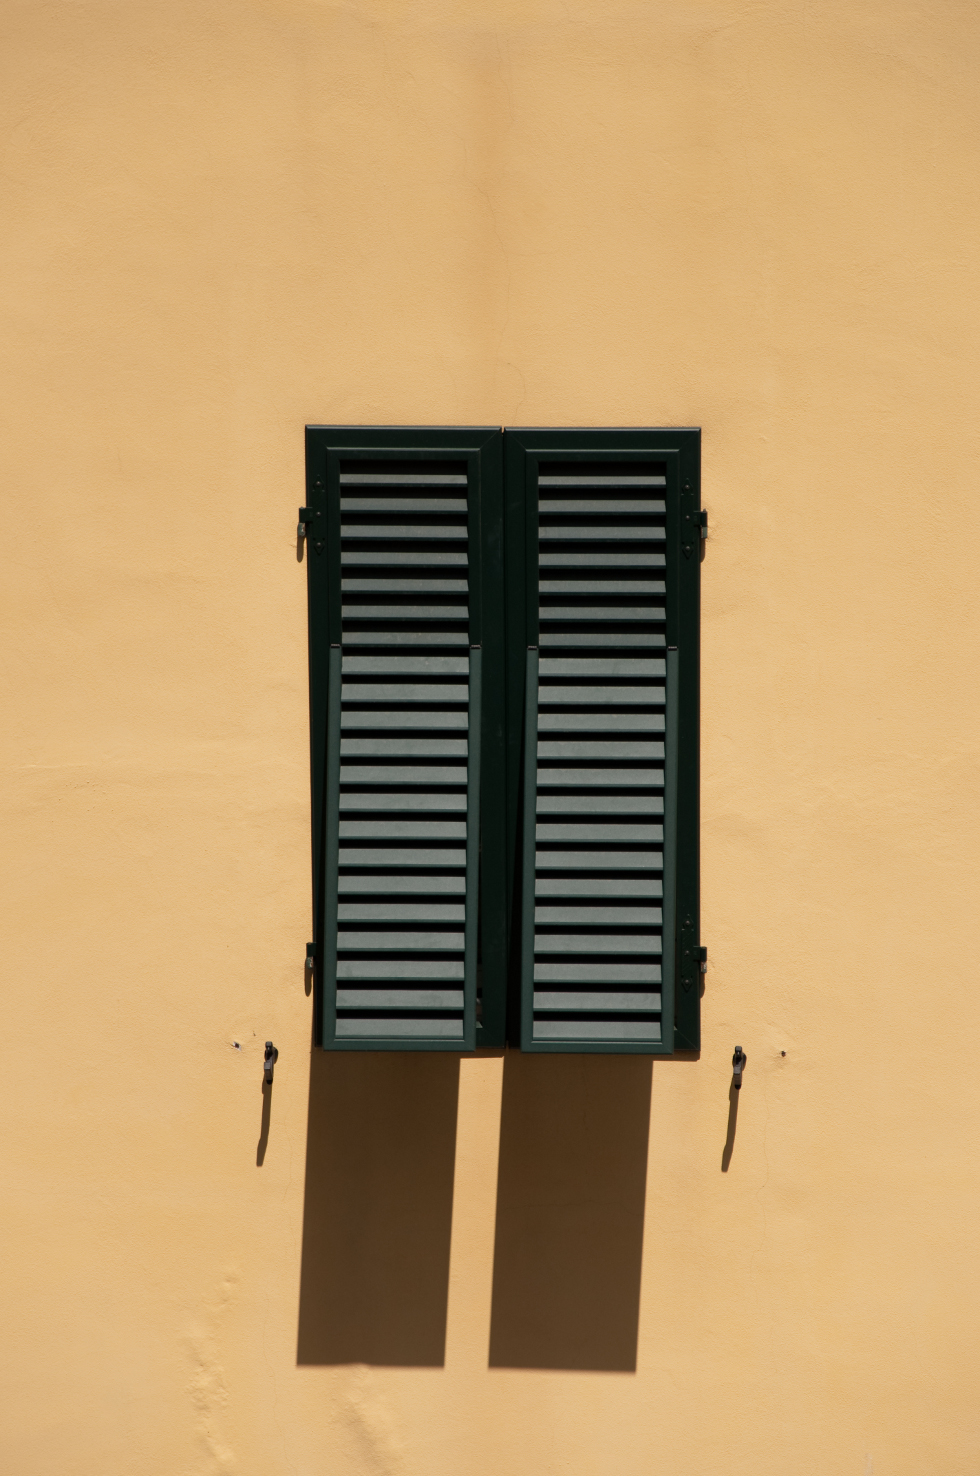 Les persiennes sont des sortes de volets protégeant du soleil et laissant passer l'air. © H005, Domaine public, Wikimedia Commons